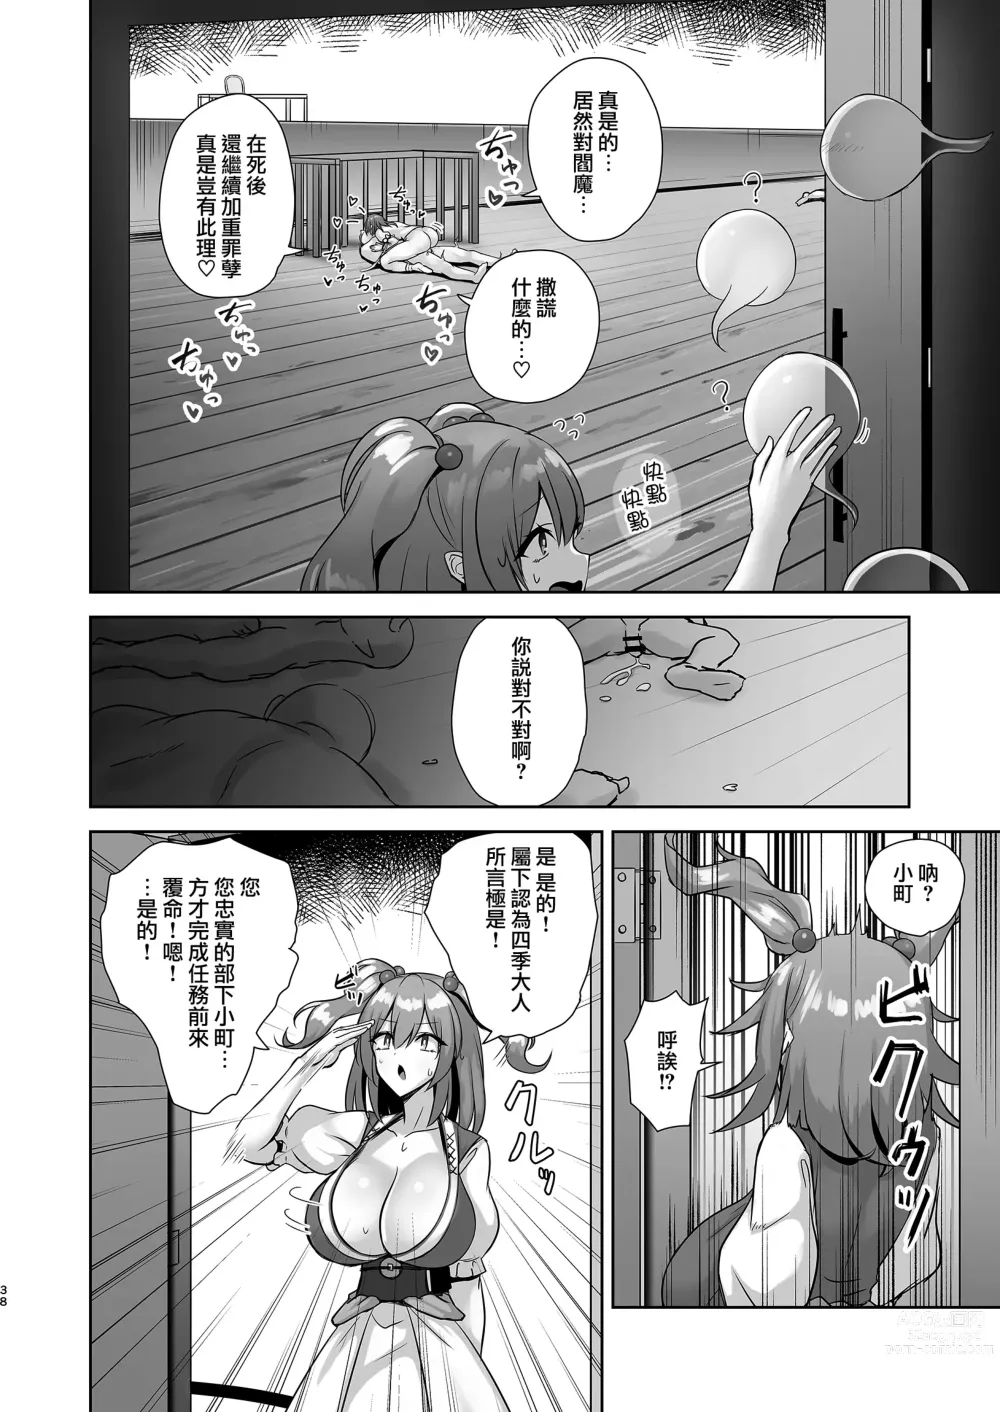 Page 37 of doujinshi Komeiseidai no Enma